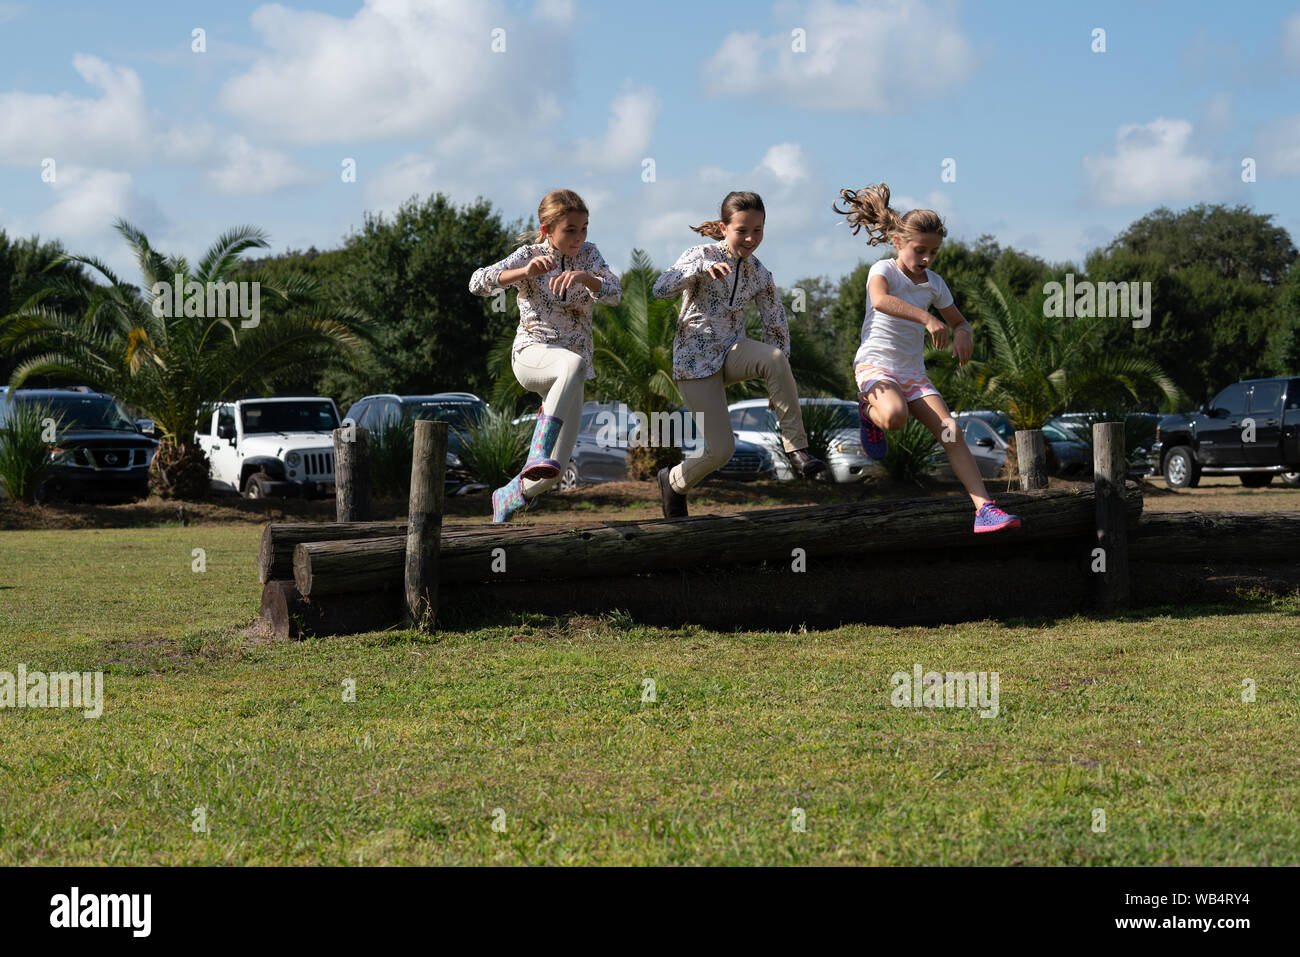 Tre giovani ragazze caucasiche sono saltando su un registro insieme ad uno spettacolo di cavalli durante l'attesa per i loro compagni di squadra per competere Foto Stock